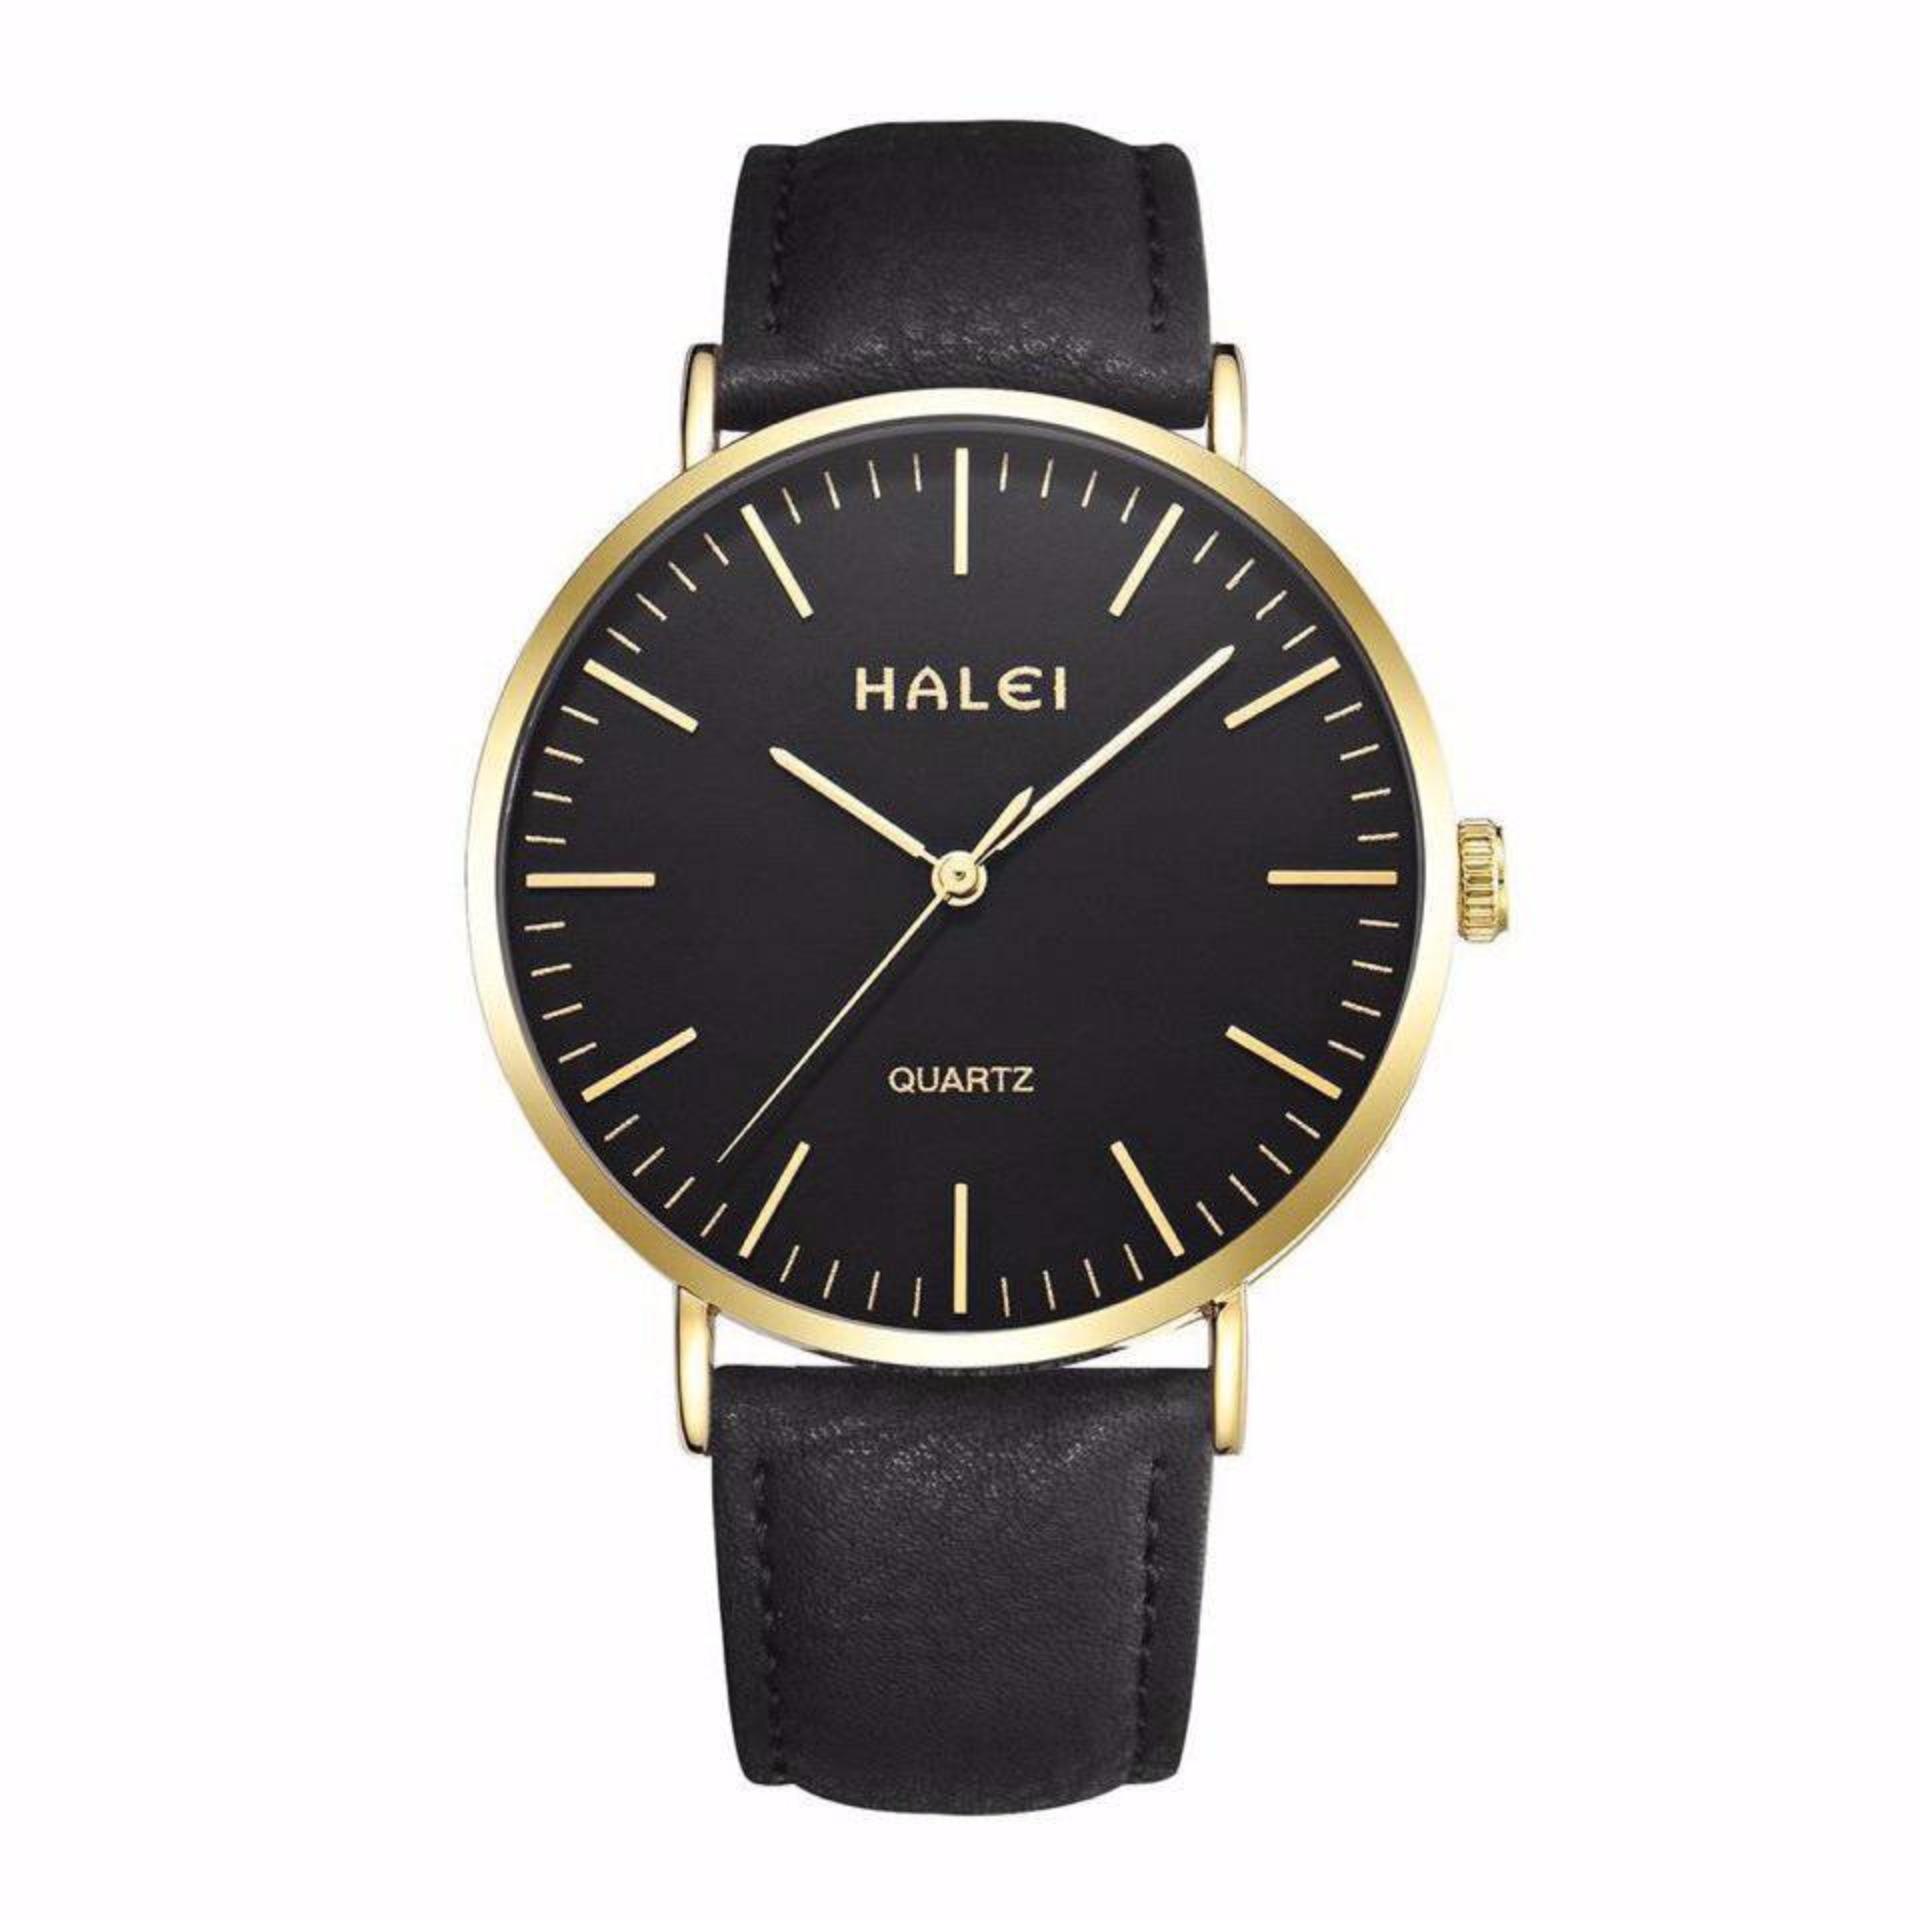 Đồng hồ nam Halei 135 dây da đen chống nước